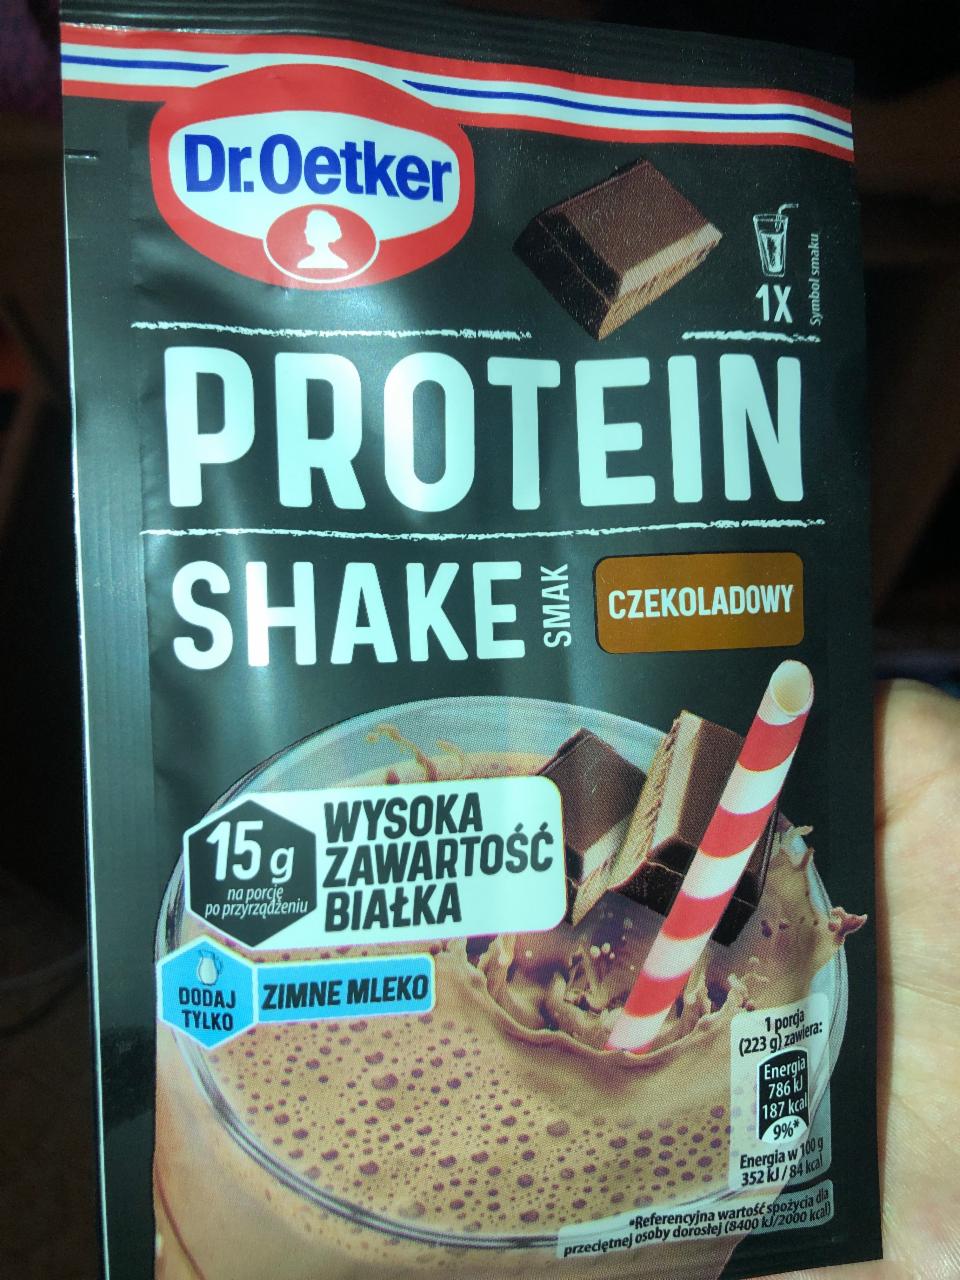 Fotografie - Protein shake smak czekoladowy Dr.Oetker